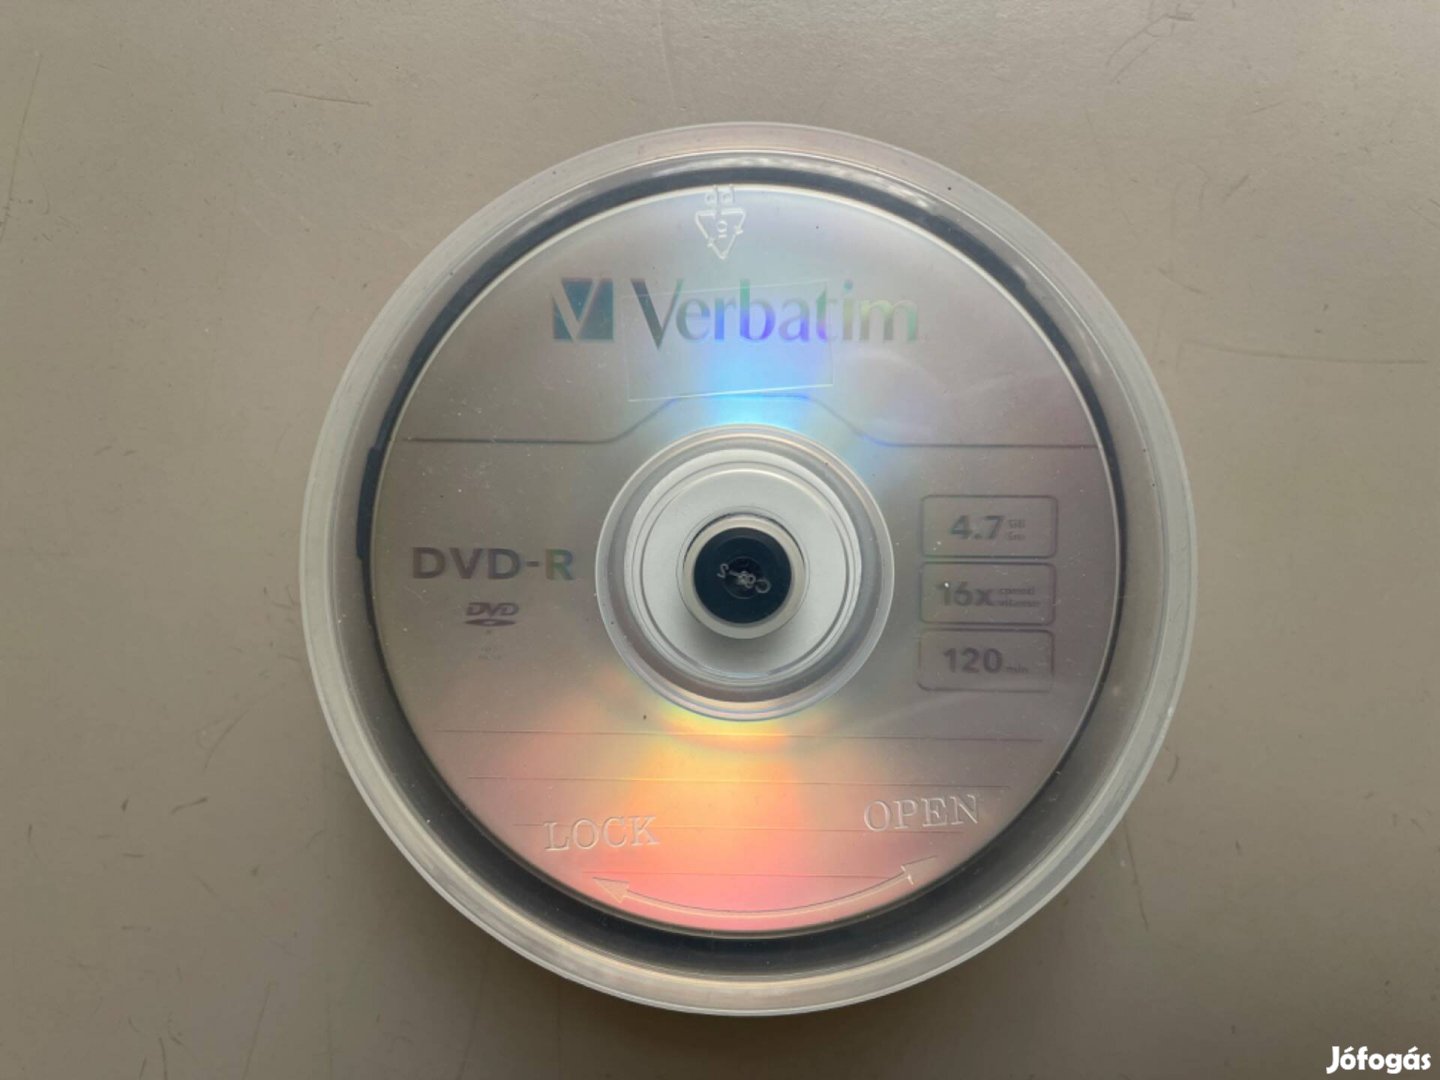 Verbatim DVD-R 20db írható üres DVD cakebox tartóban